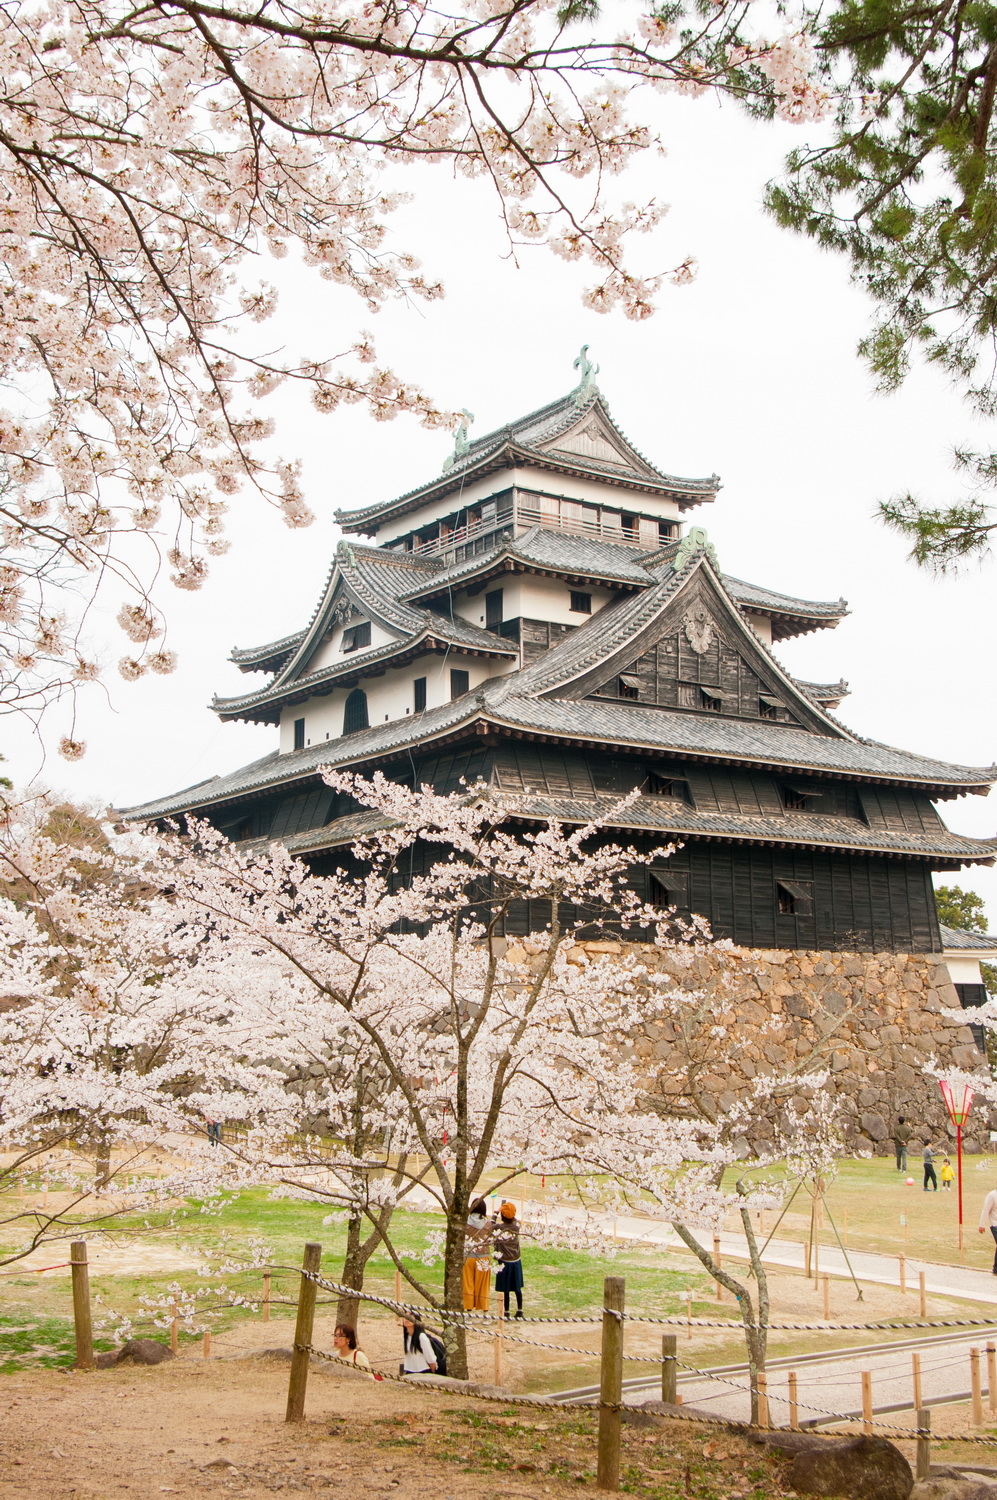 Matsue Shimane Japon tourisme voyage trip rural authentique reculé chateau edo cerisier sakura hanami